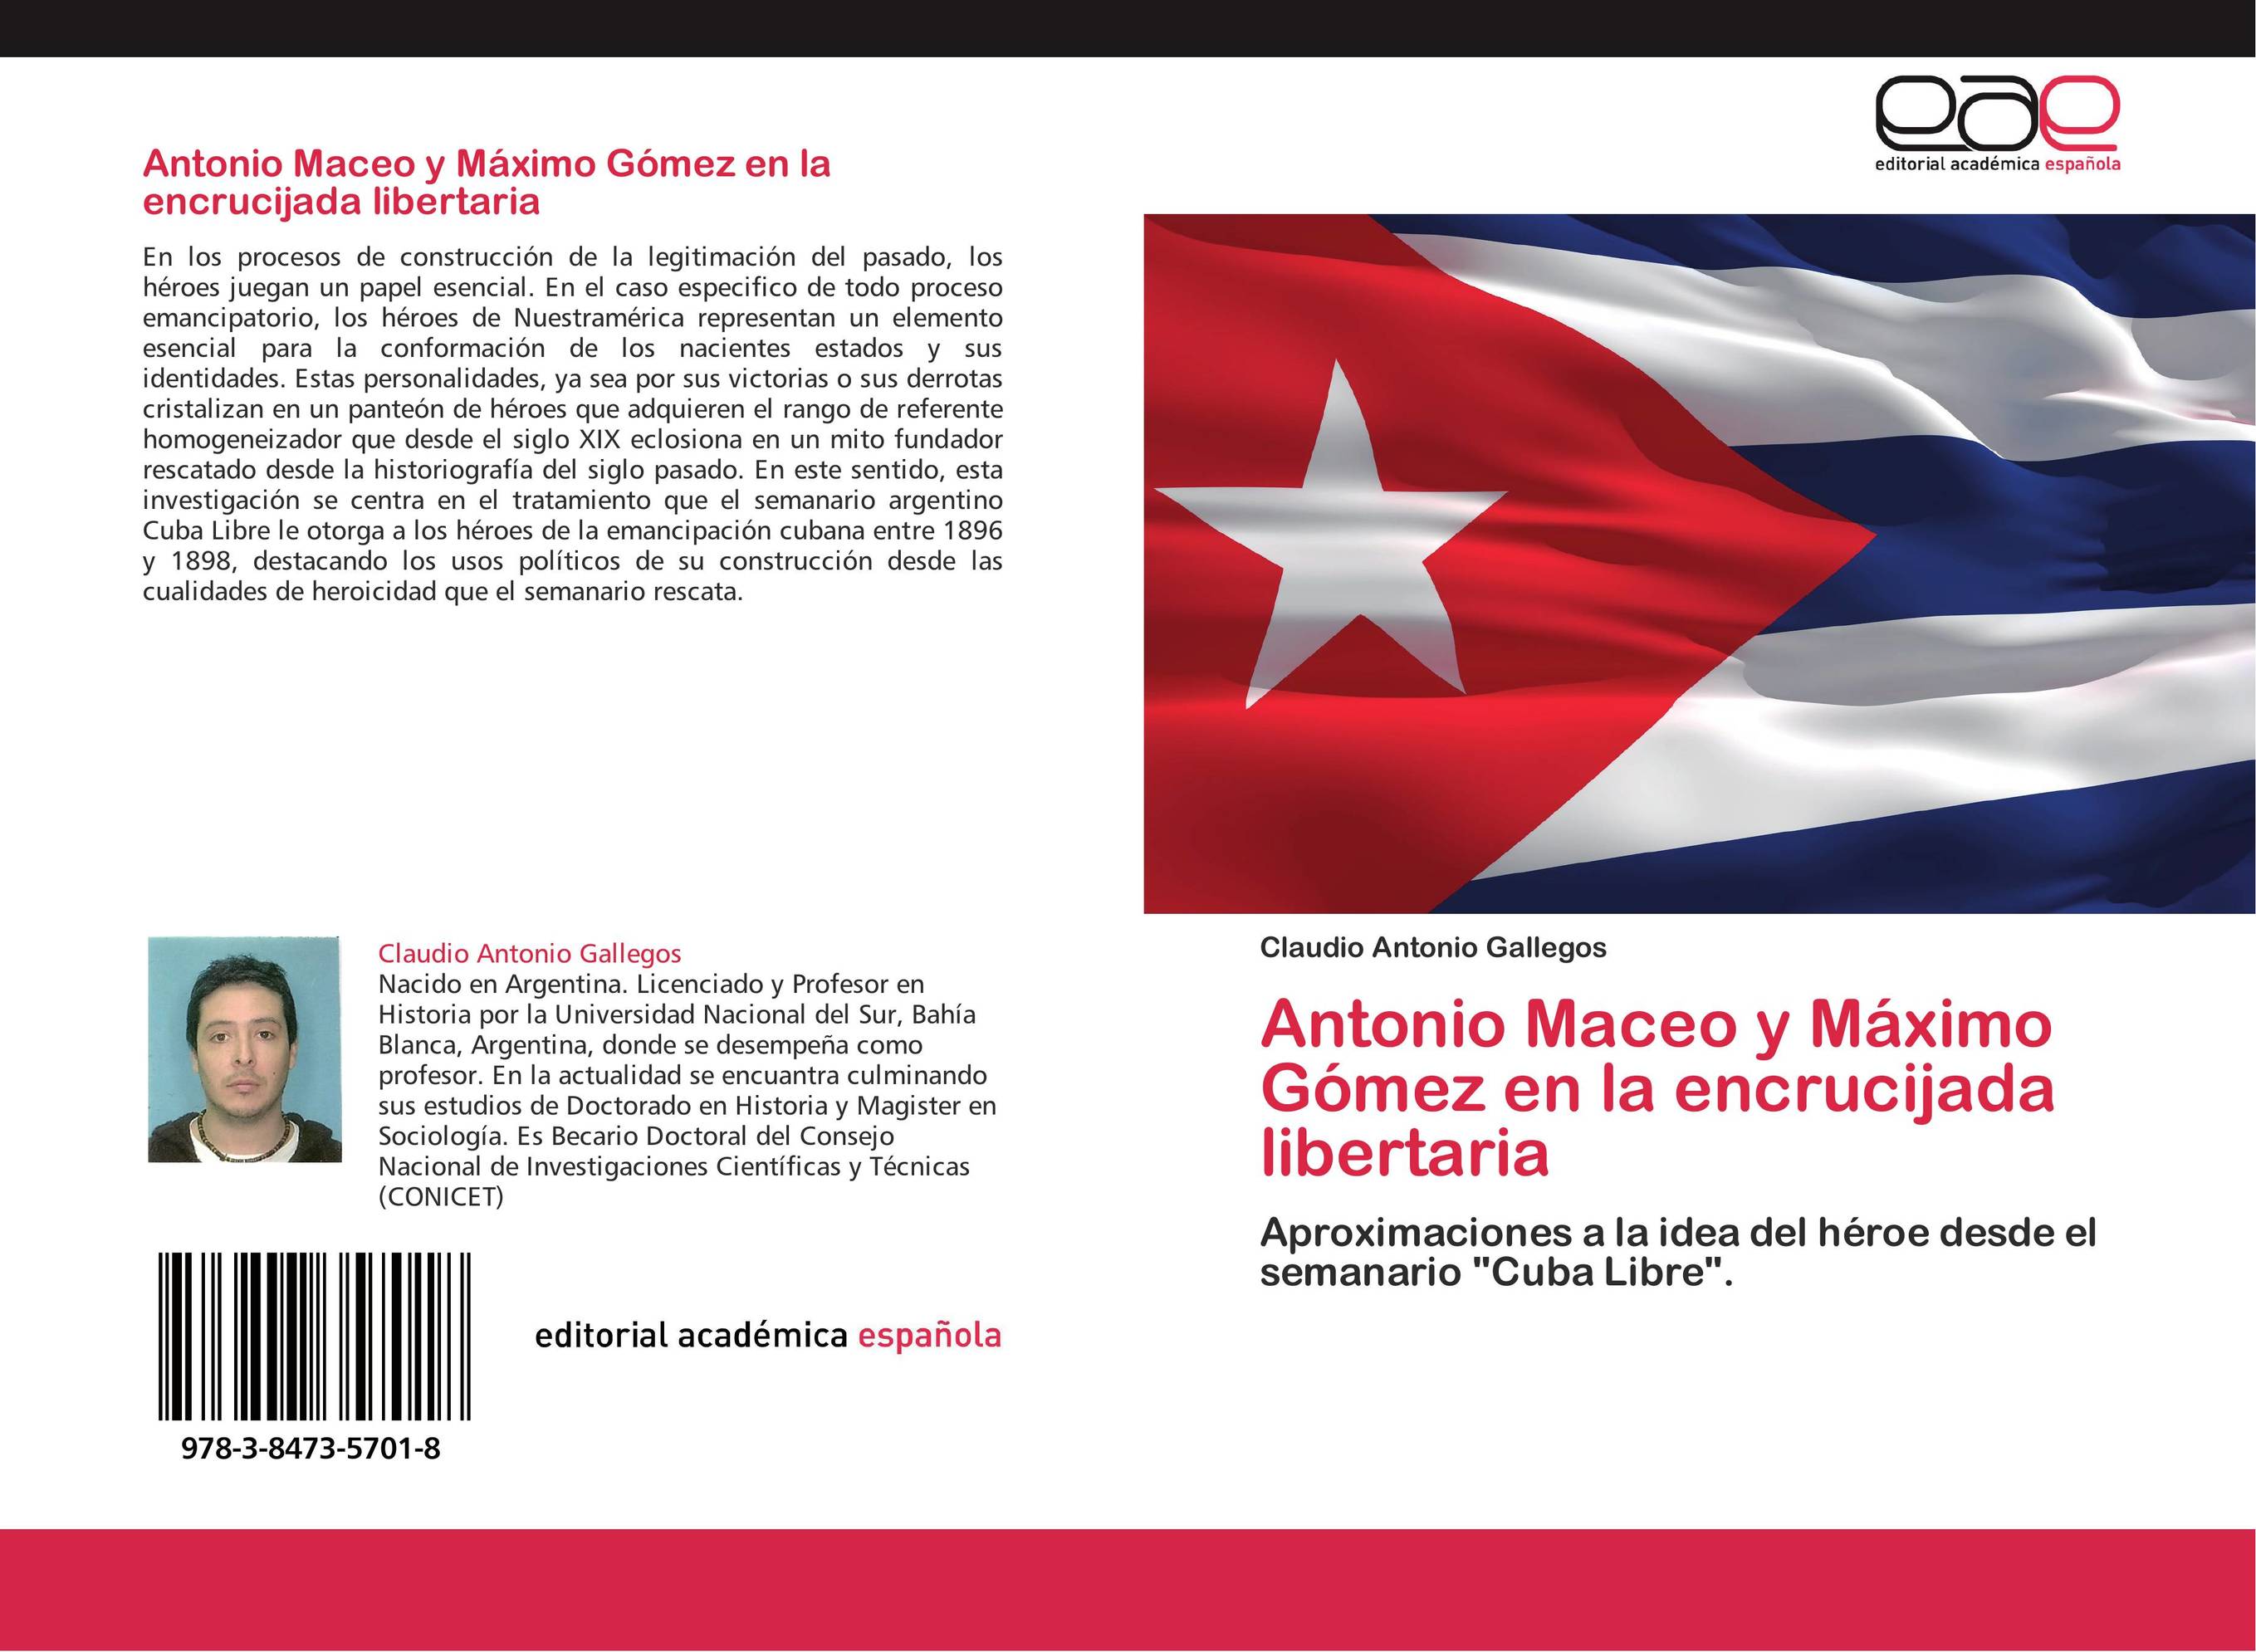 Antonio Maceo y Máximo Gómez en la encrucijada libertaria